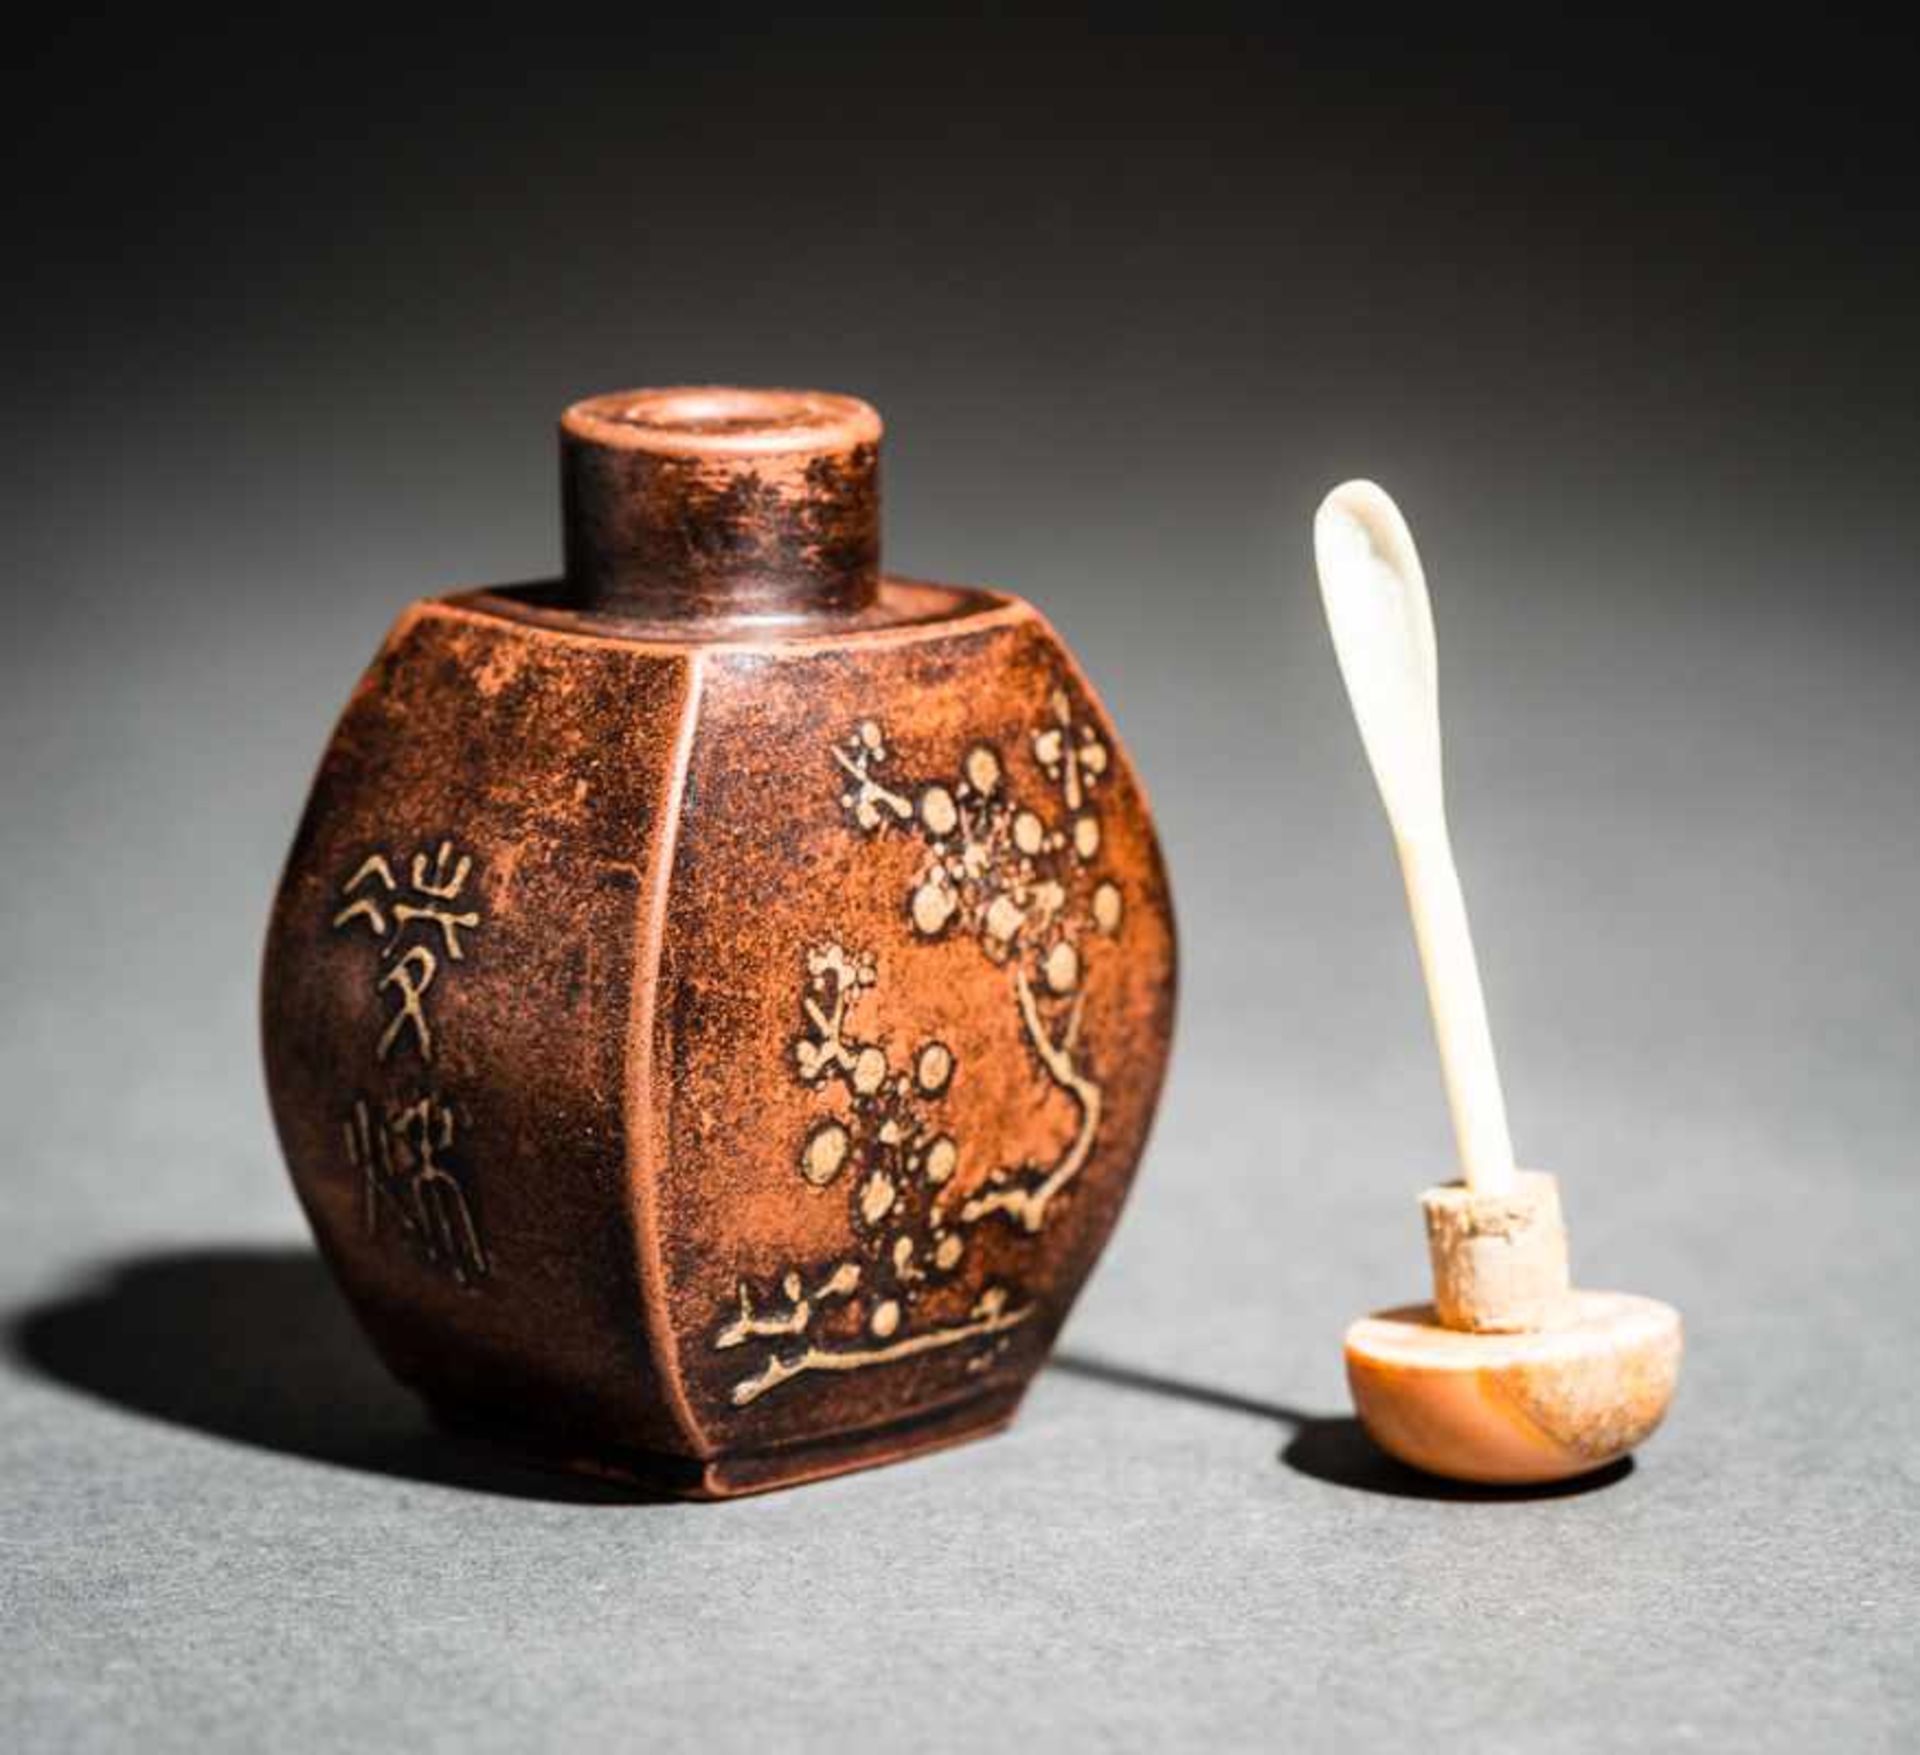 YIXING KERAMIK-SNUFFBOTTLE MIT BAMBUS UND PRUNUS Yixing Keramik, China. Reizend fein gebildete - Bild 4 aus 5